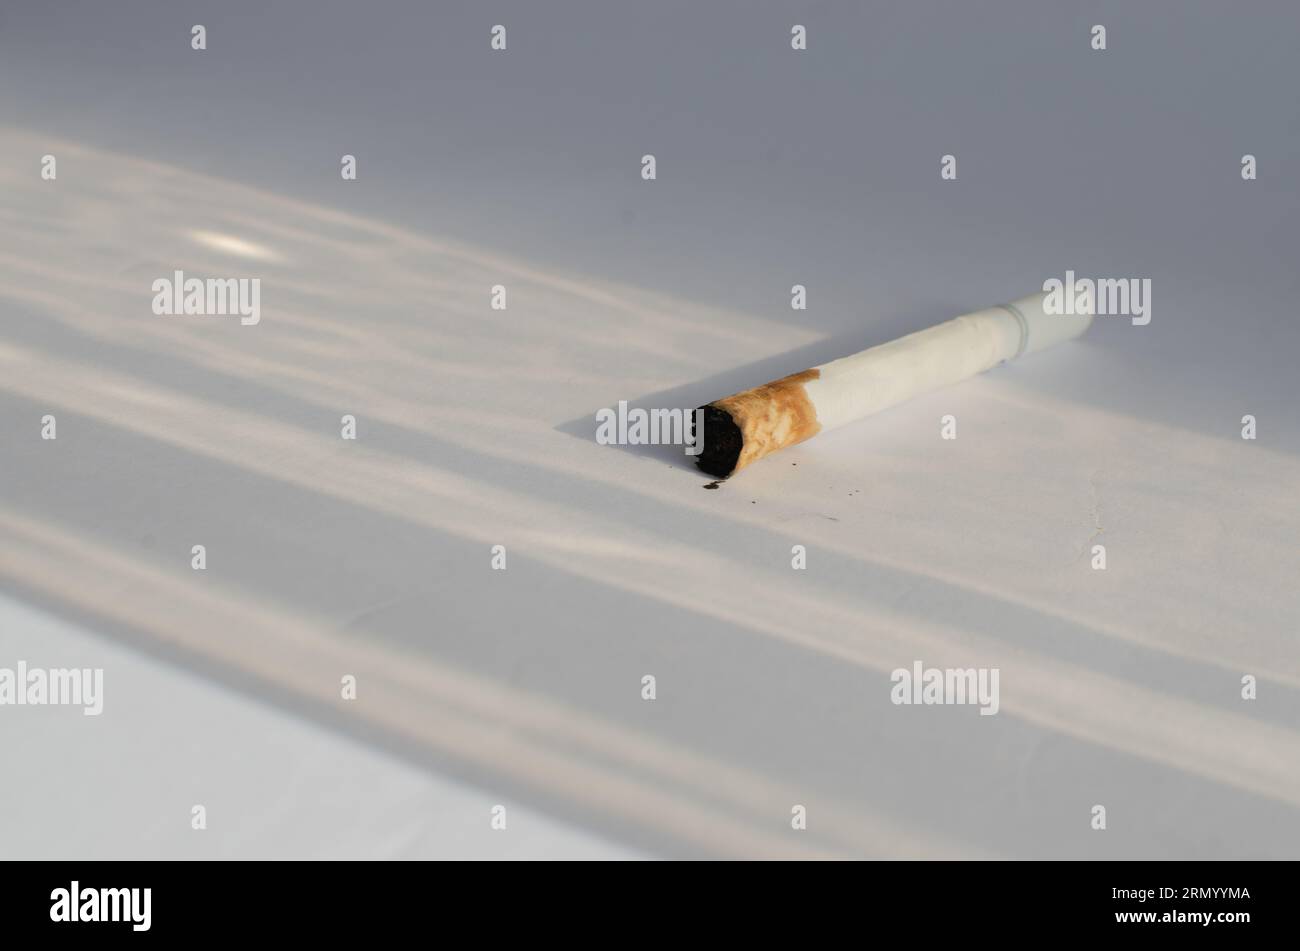 Dettaglio delle sigarette su una superficie bianca, che simboleggia i rischi per la salute e le malattie associate al fumo. Foto Stock